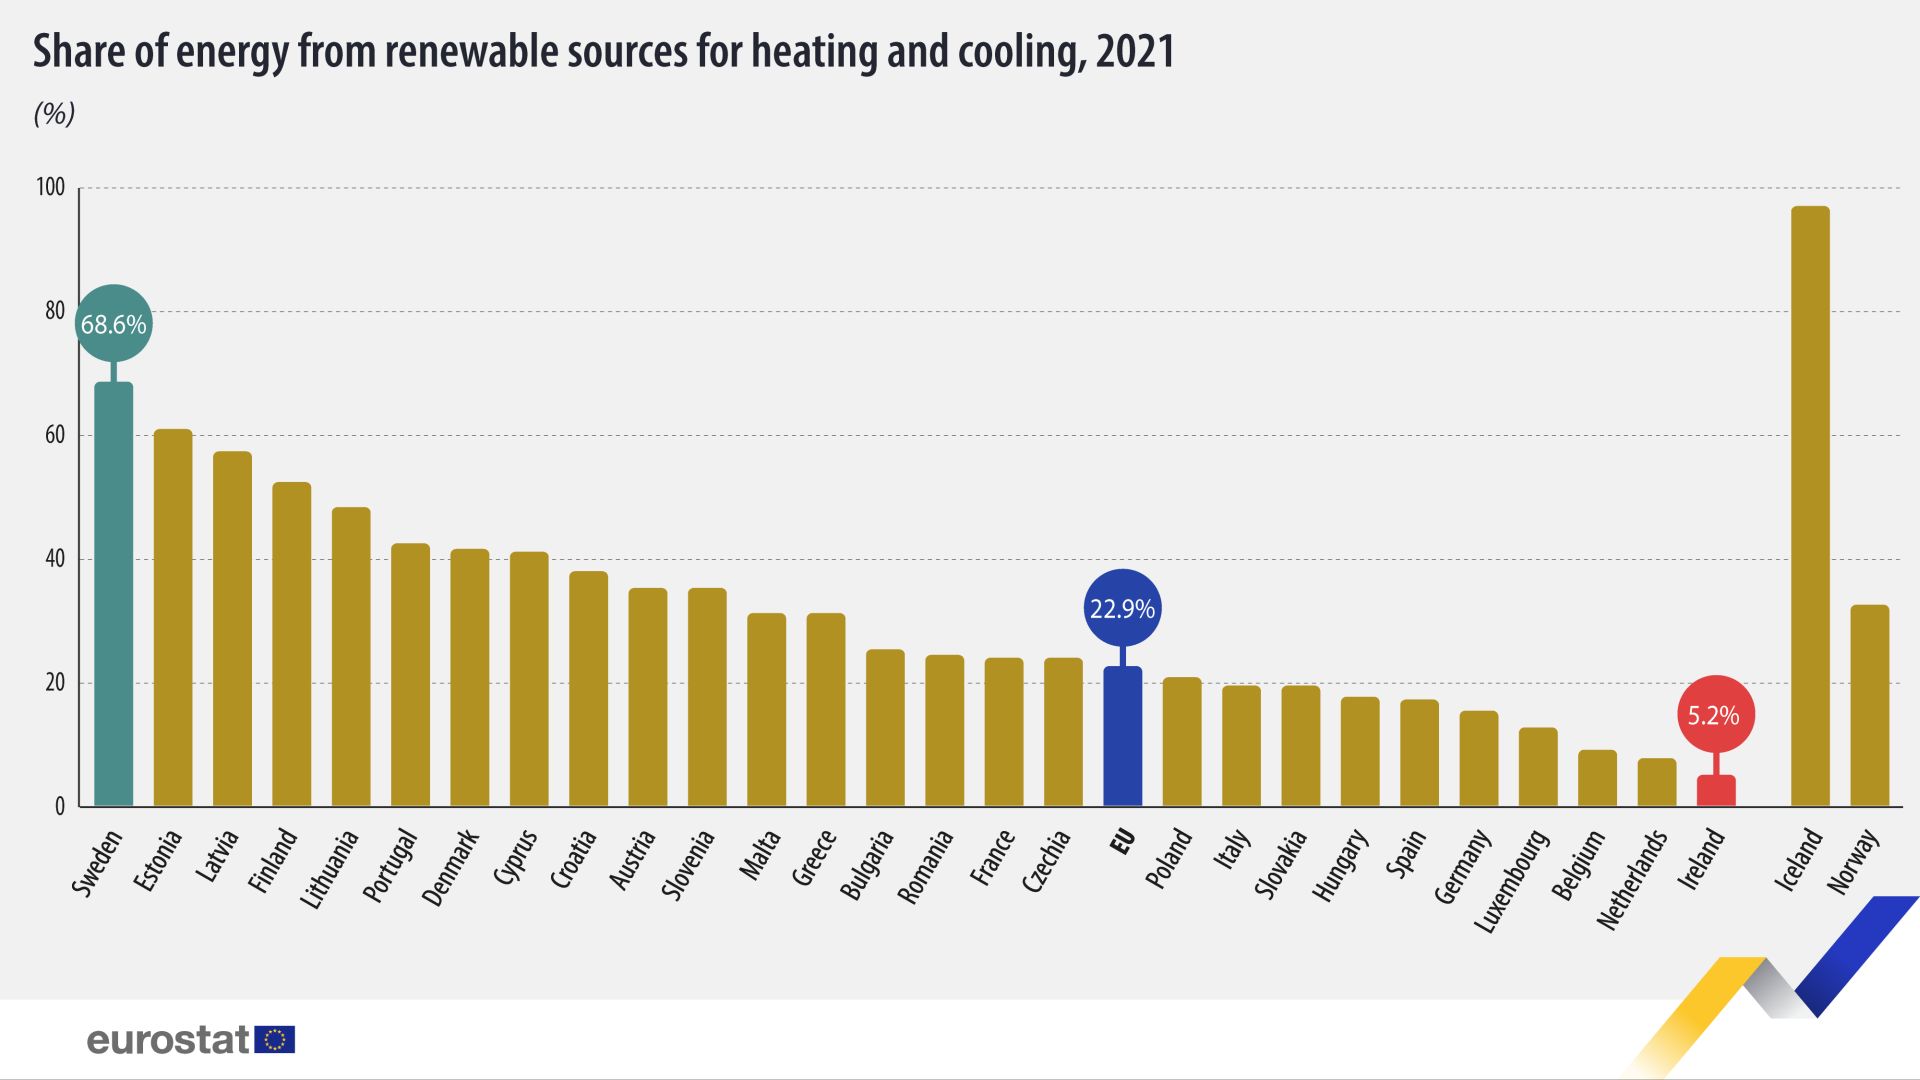 Podiel energie z obnoviteľných zdrojov spotrebovanej na vykurovanie a chladenie vzostupe